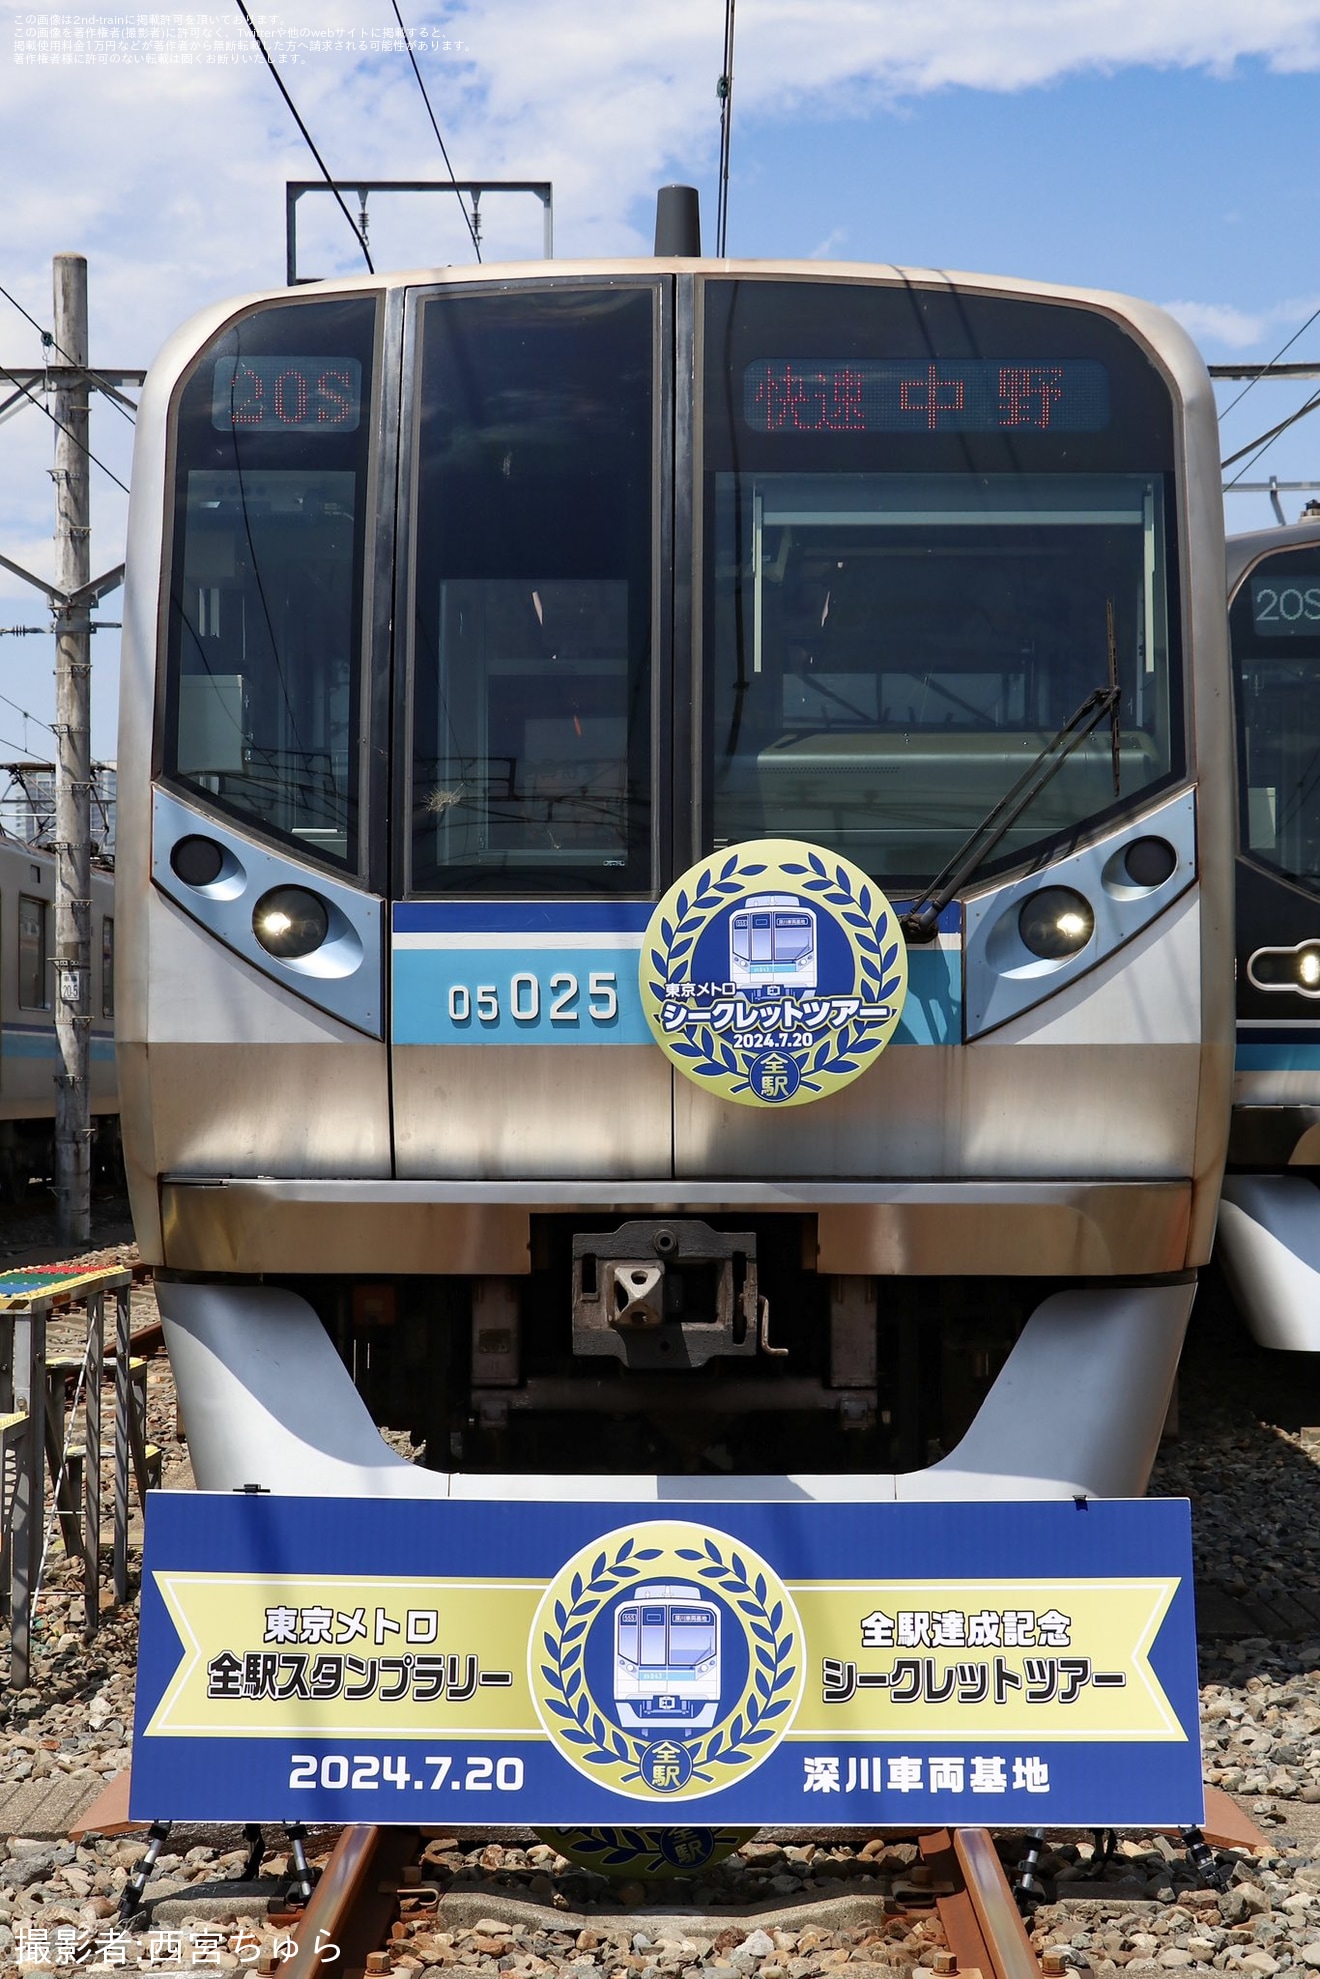 【メトロ】「東京メトロシークレットツアー2024 in深川車両基地」が開催の拡大写真